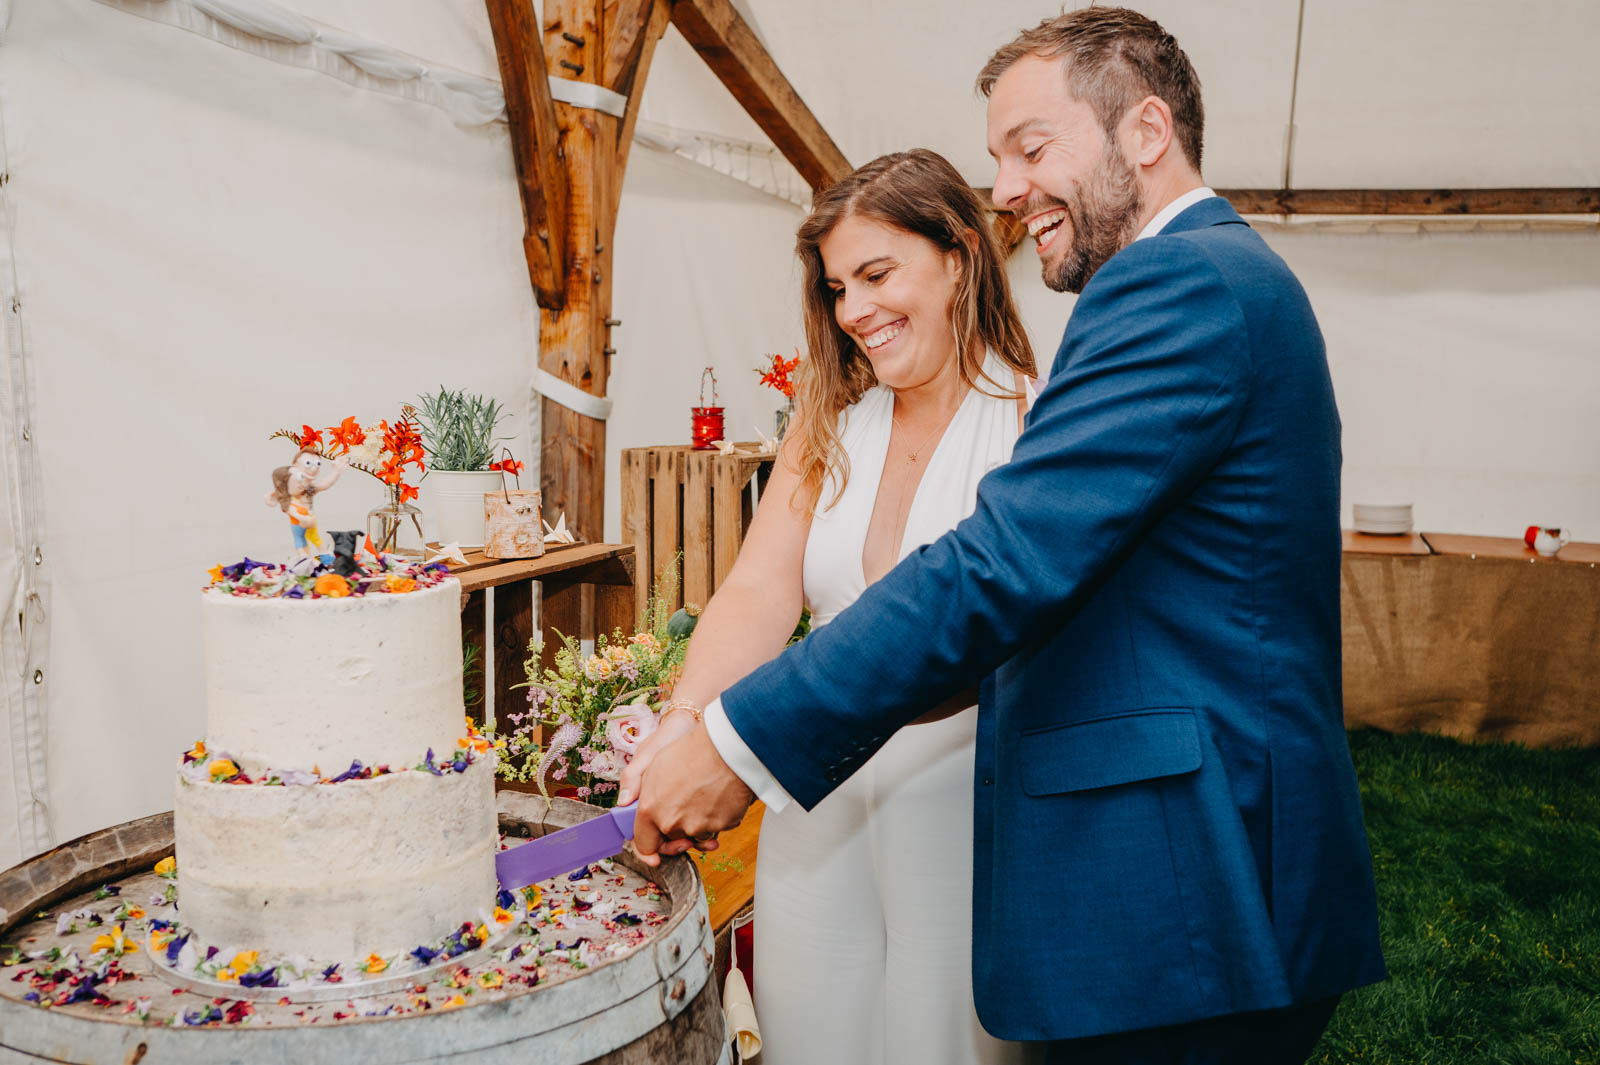 Festival wedding - wedding cake cutting